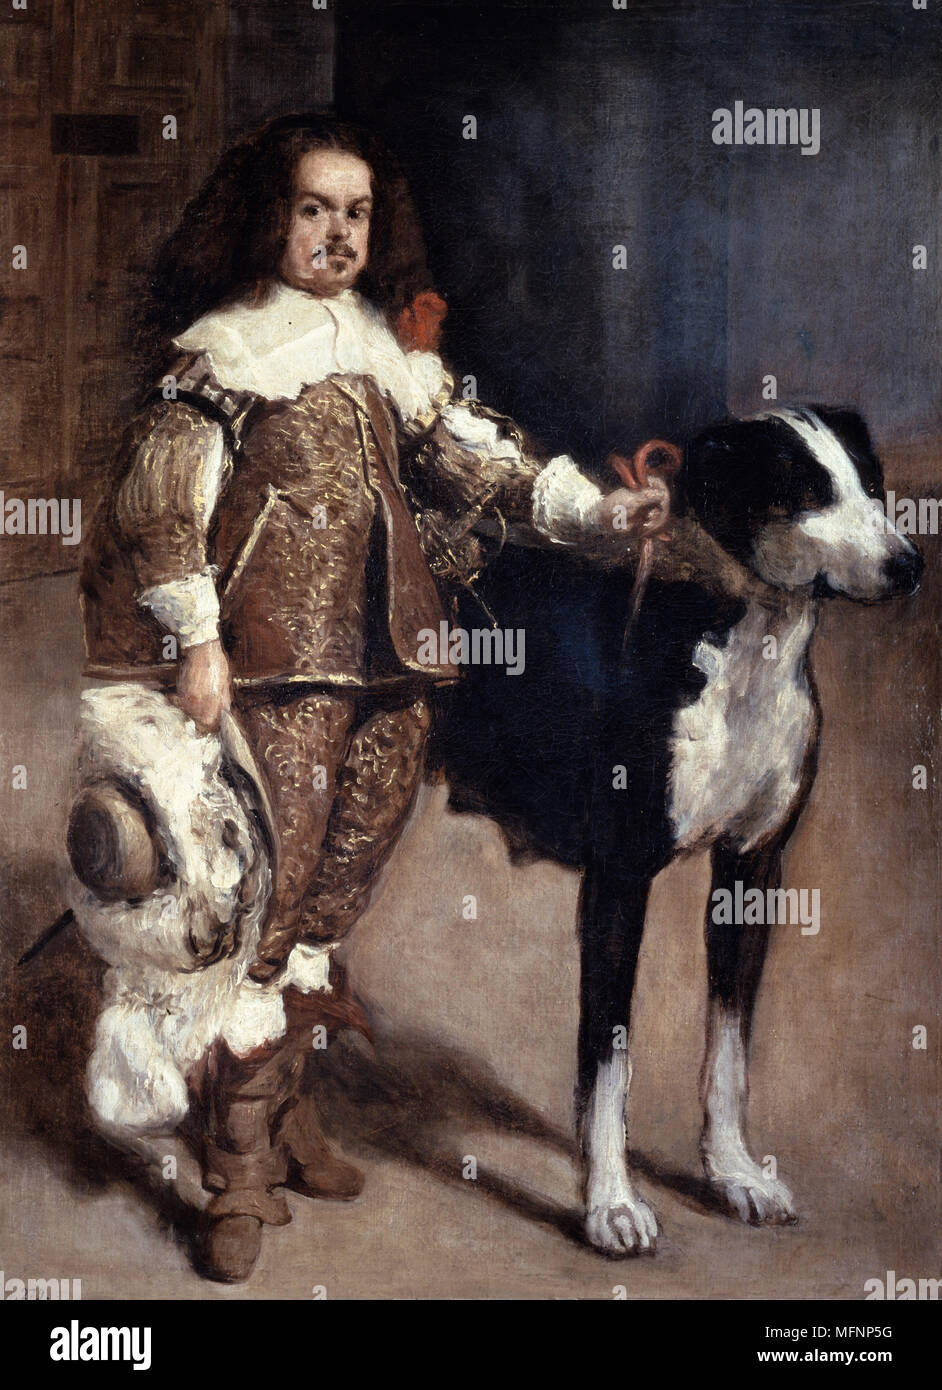 Compter Don Antonio el Ingles avec son chien. 1640-1645. Diego Velasquez (1599-1660) peintre espagnol. Huile sur toile. Banque D'Images